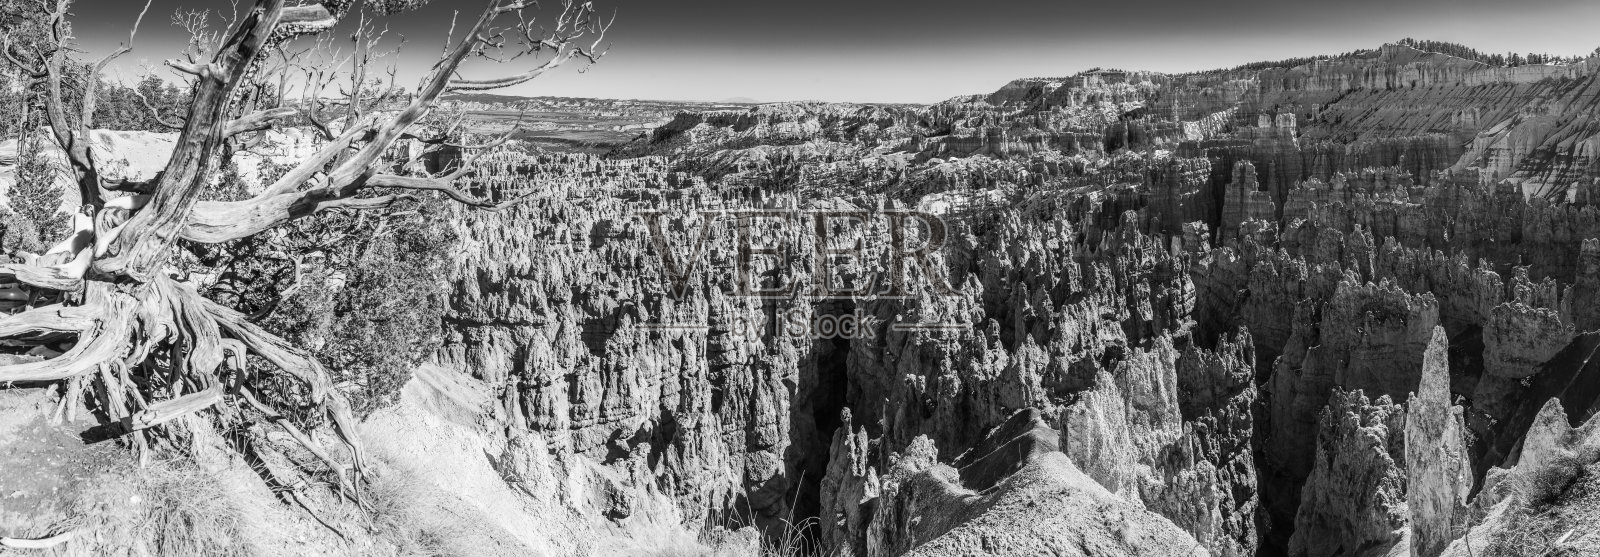 布莱斯峡谷黑白全景在美国犹他州hoodoo照片摄影图片